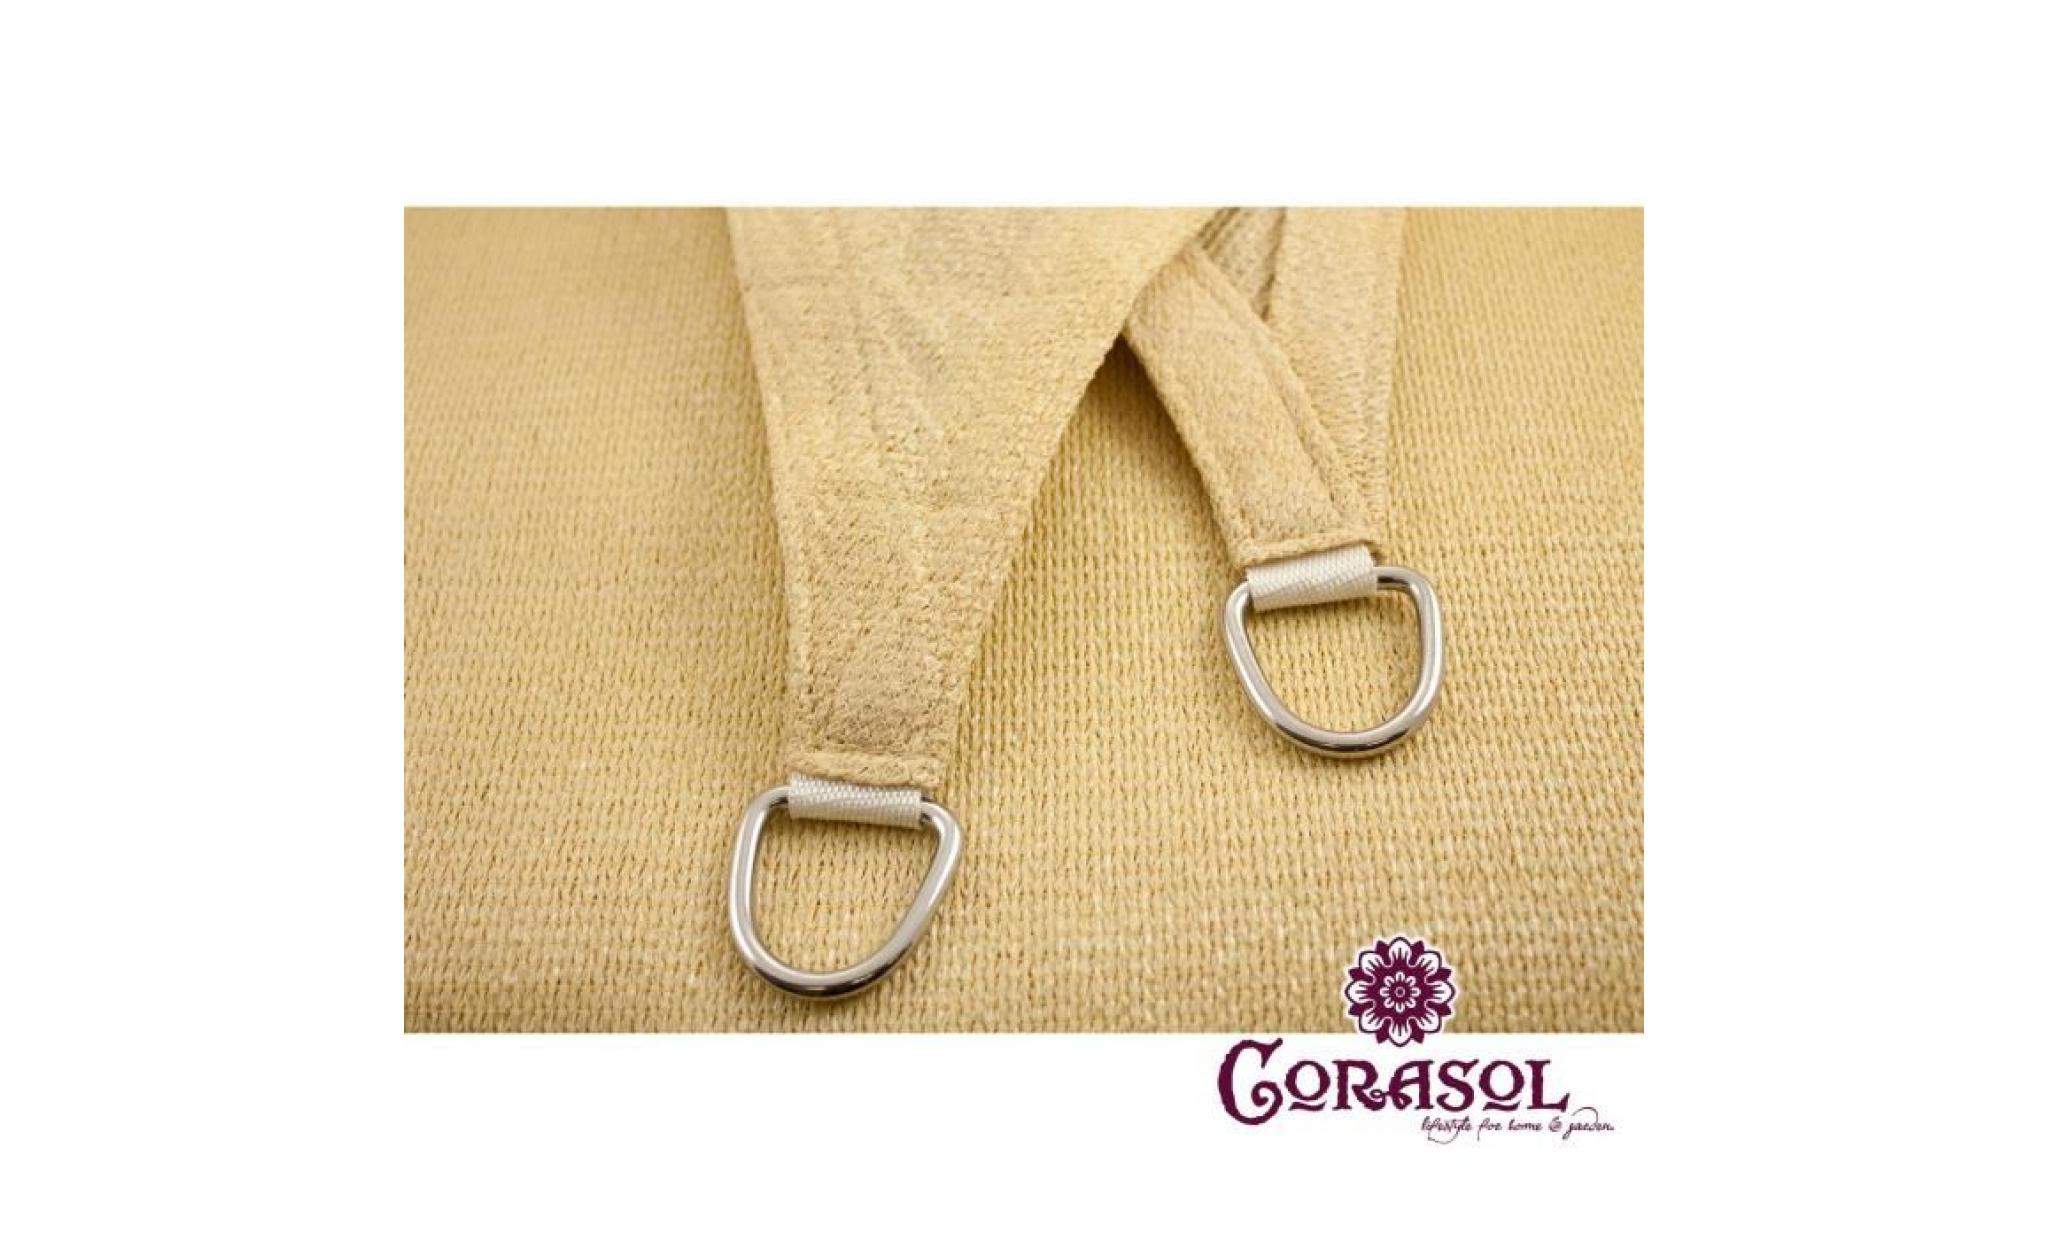 corasol cor10ra36 sb voile d'ombrage premium, 3,6x3,6x5m, 90° degré triangle, beige sable (1 pièce) pas cher